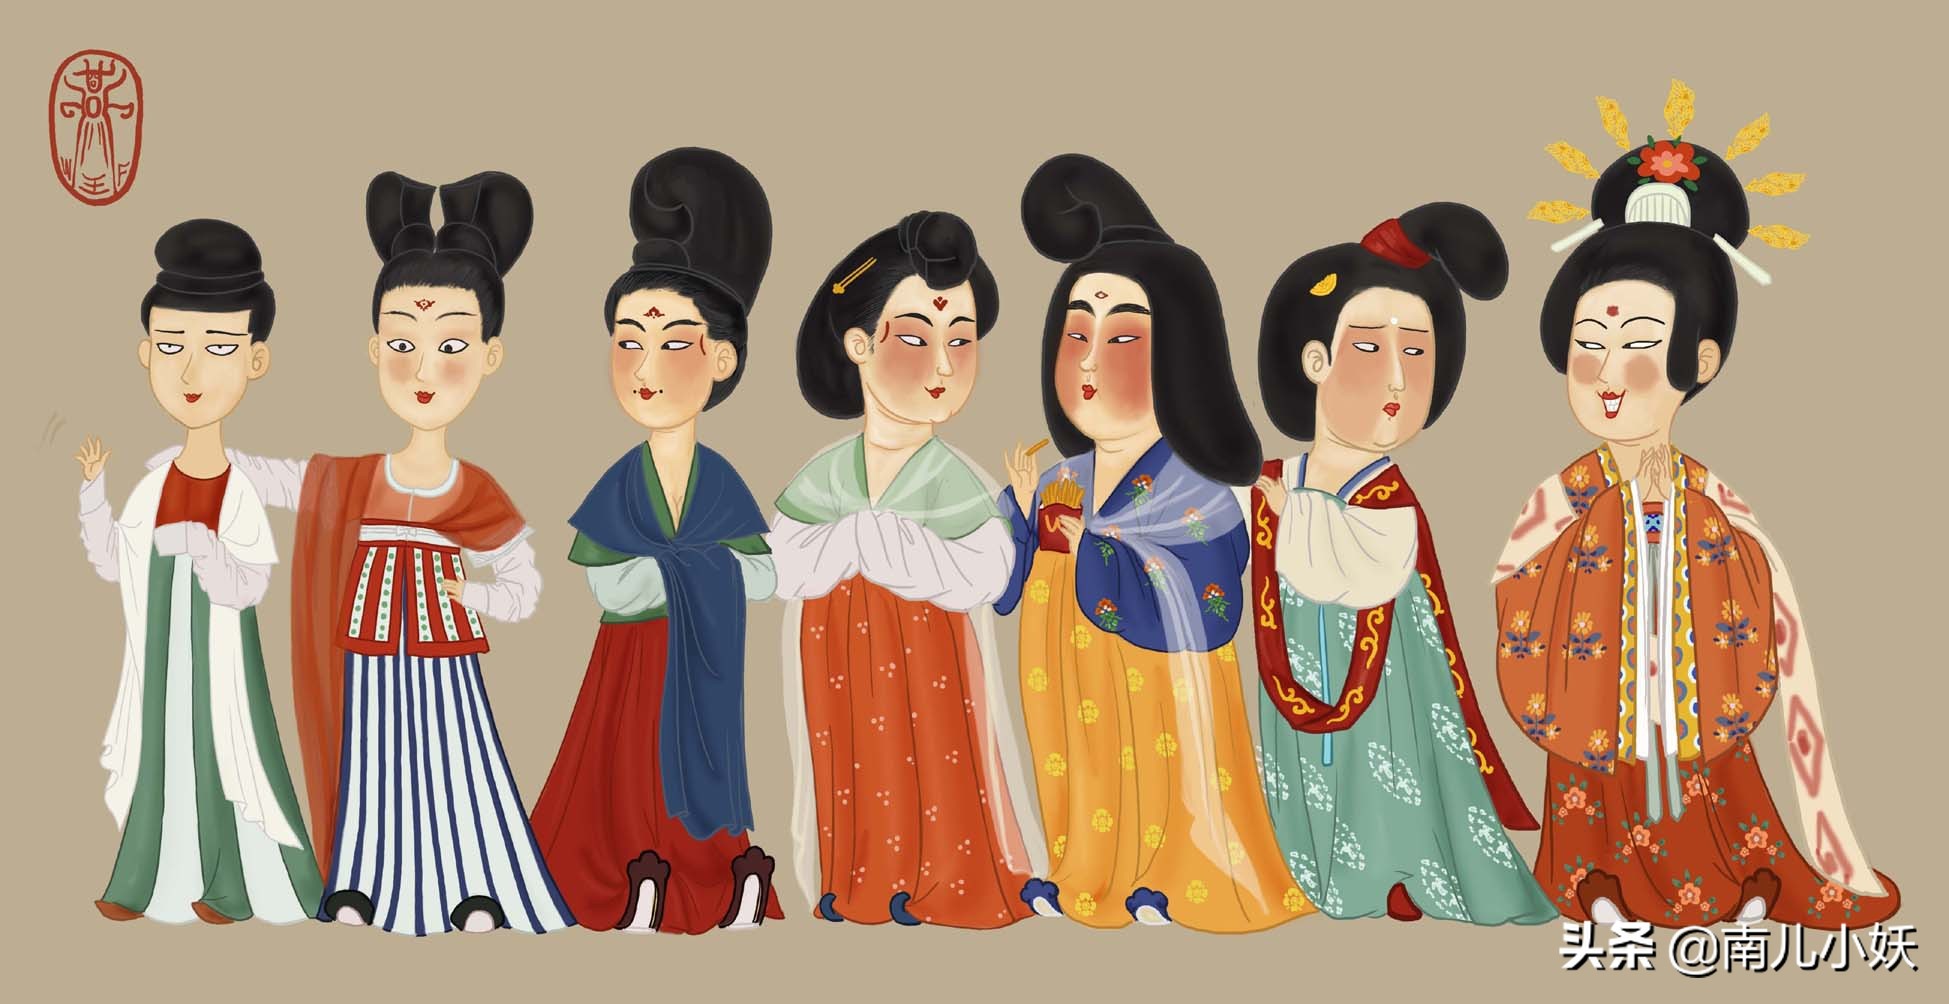 汉服,和服,韩服为什么女子发髻头饰最重要?东亚传统发饰解析